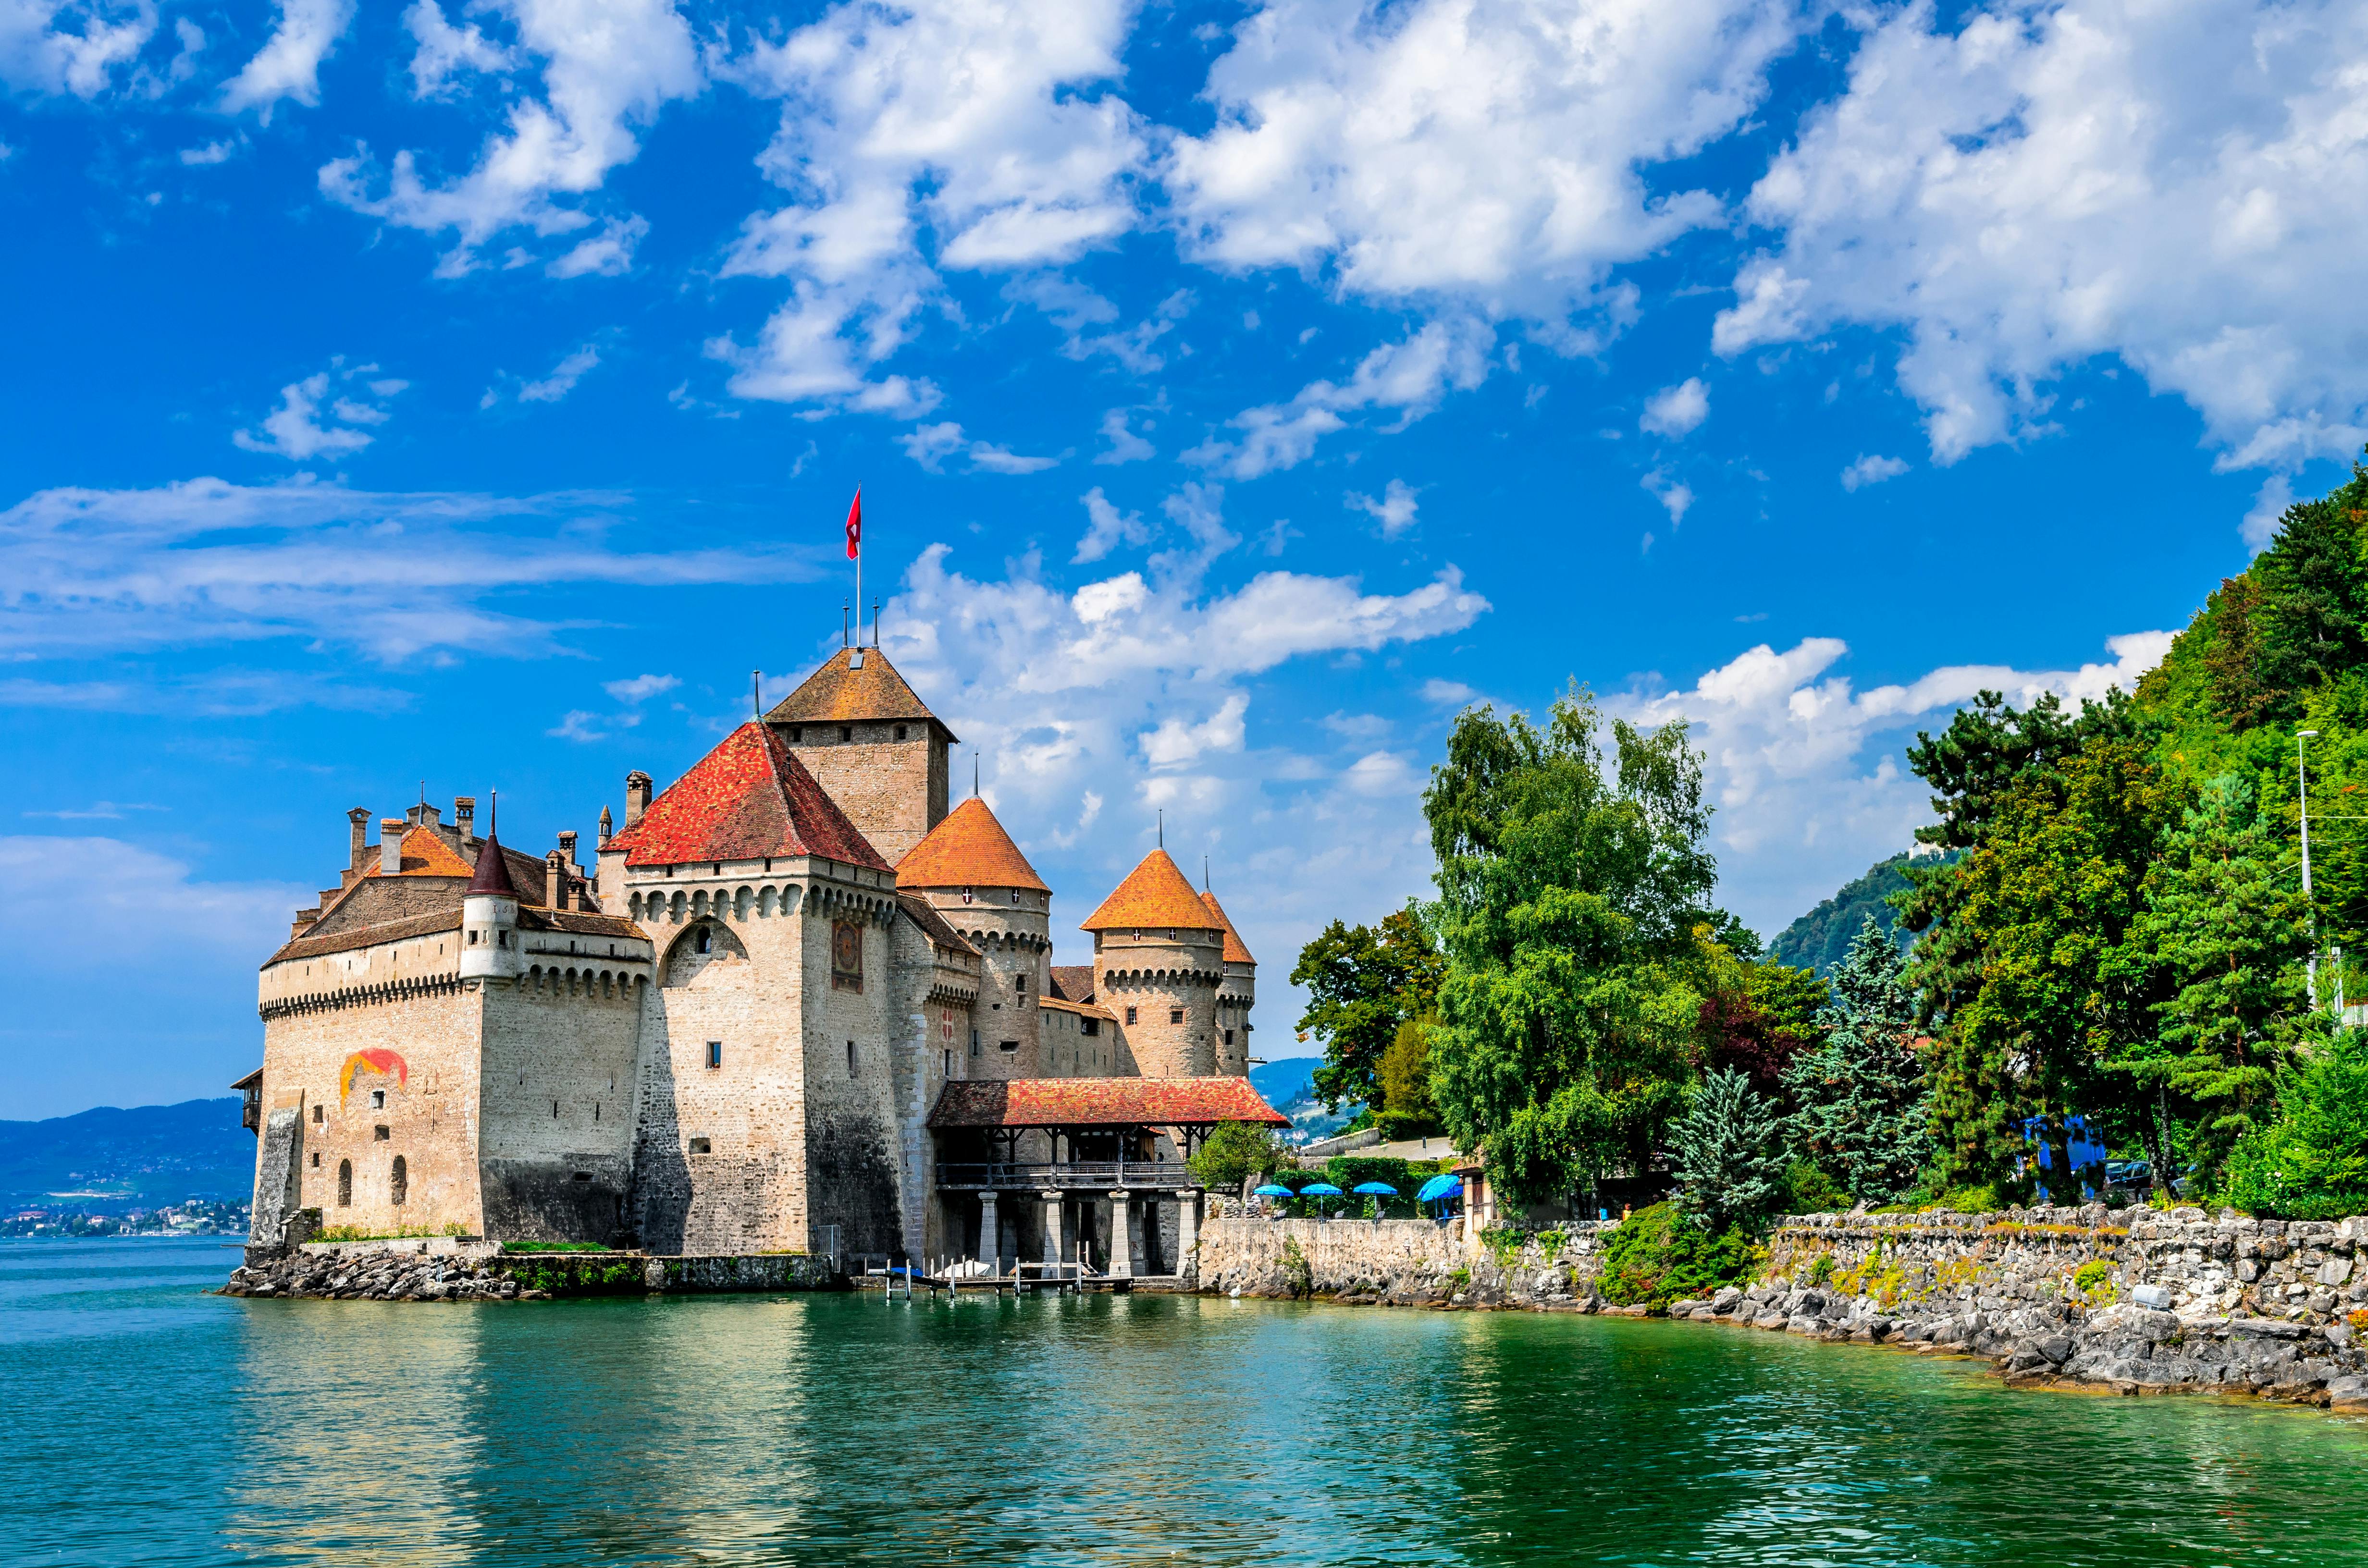 Jednodniowa wycieczka autobusem do zamku Montreux i Chillon z Lozanny